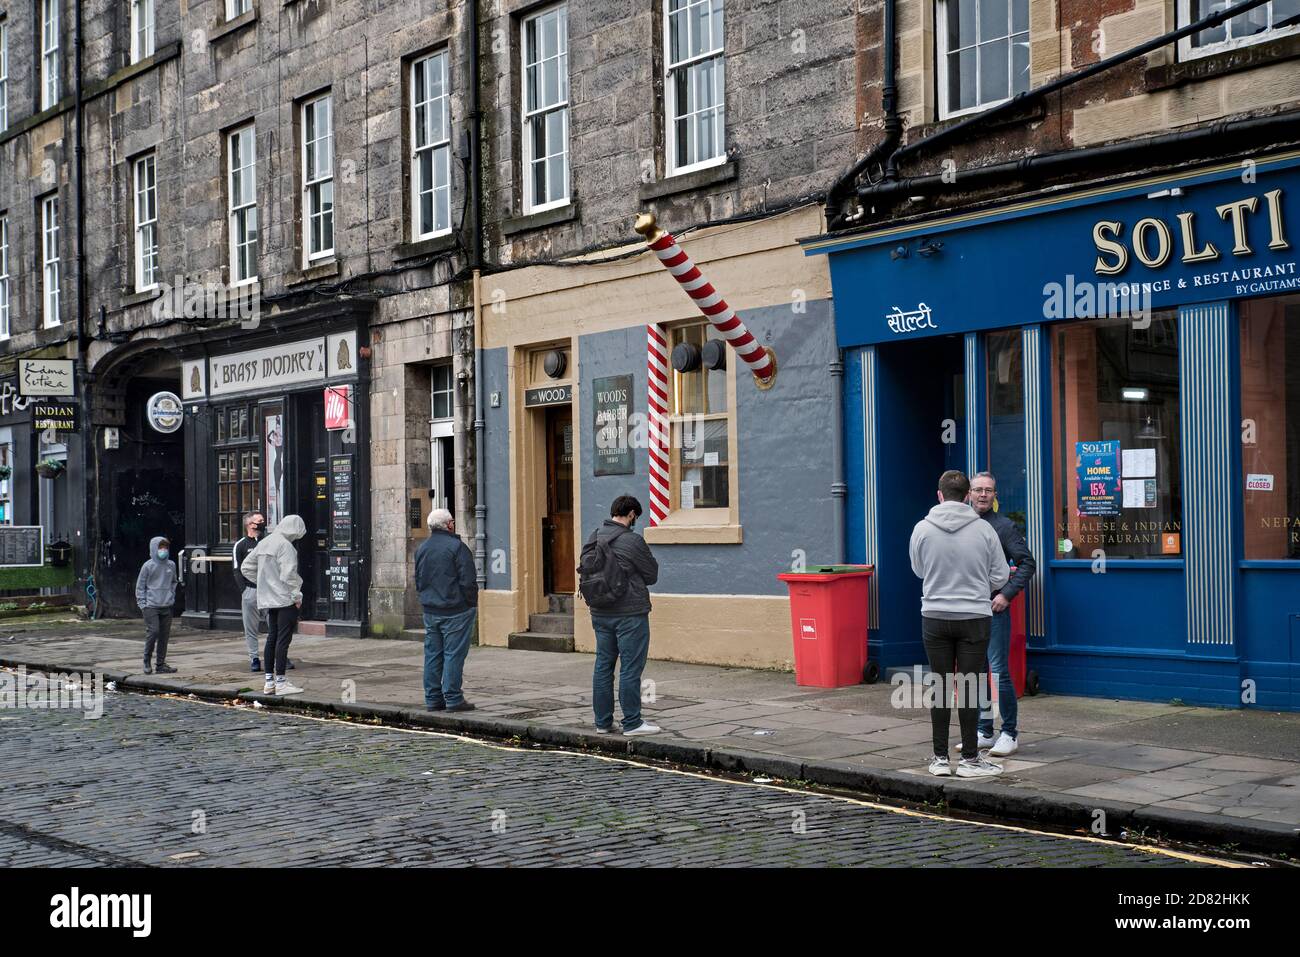 File d'attente socialement distancée pour Woods Barbers sur Drummond Street, Édimbourg, Écosse, Royaume-Uni. Banque D'Images